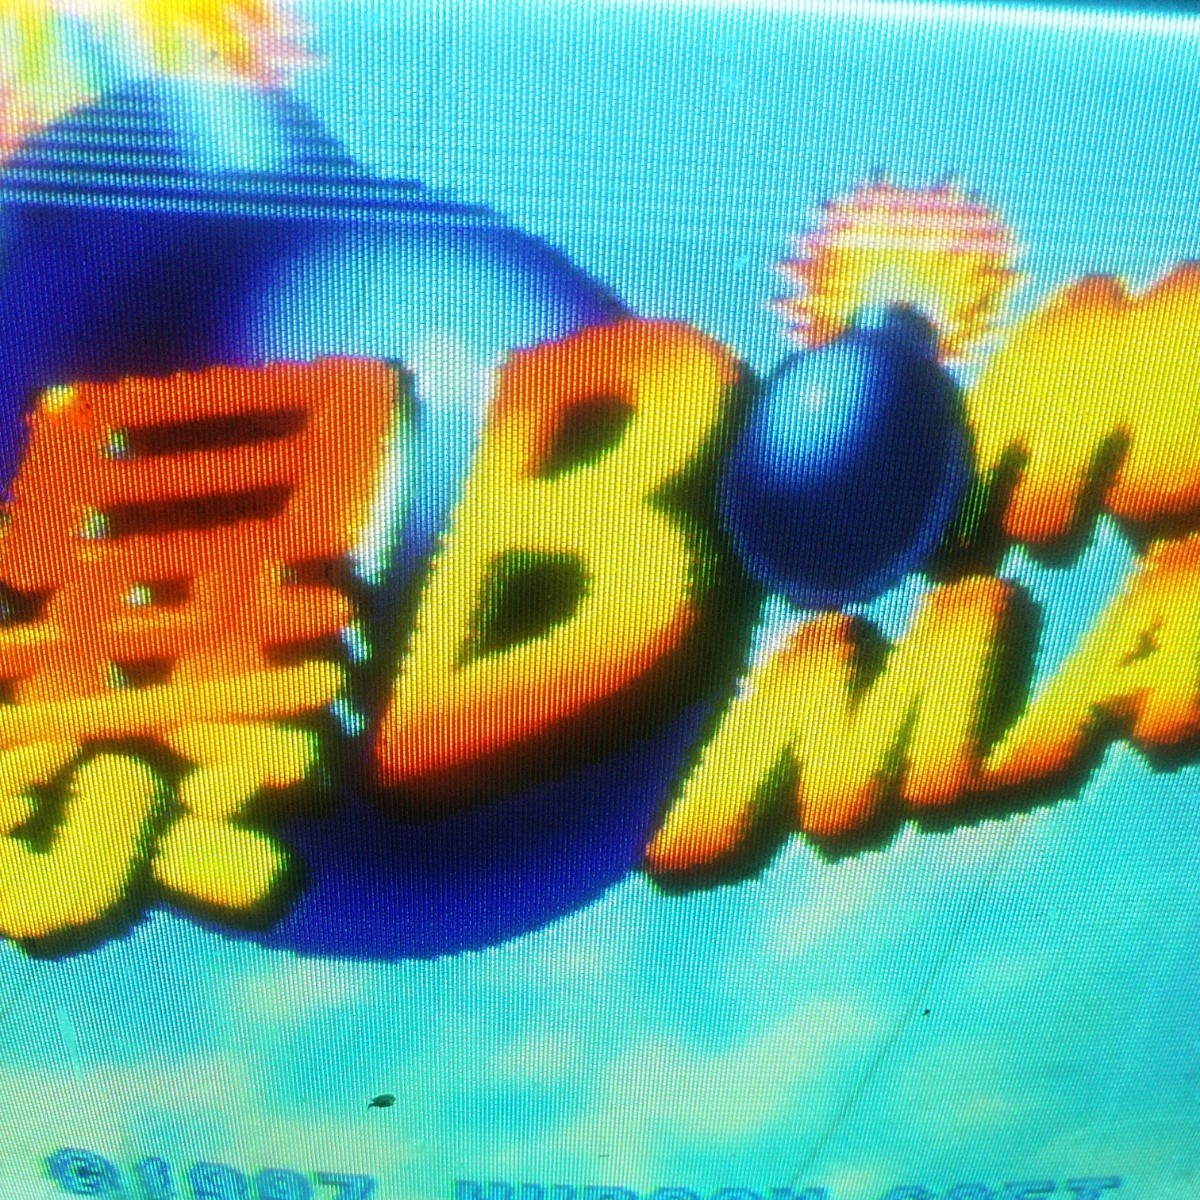 爆ボンバーマン　爆ボンバーマン2 　ボンバーマンヒーロー　ニンテンドー64ソフト　任天堂64ソフト　ロクヨン　入手困難　激レア